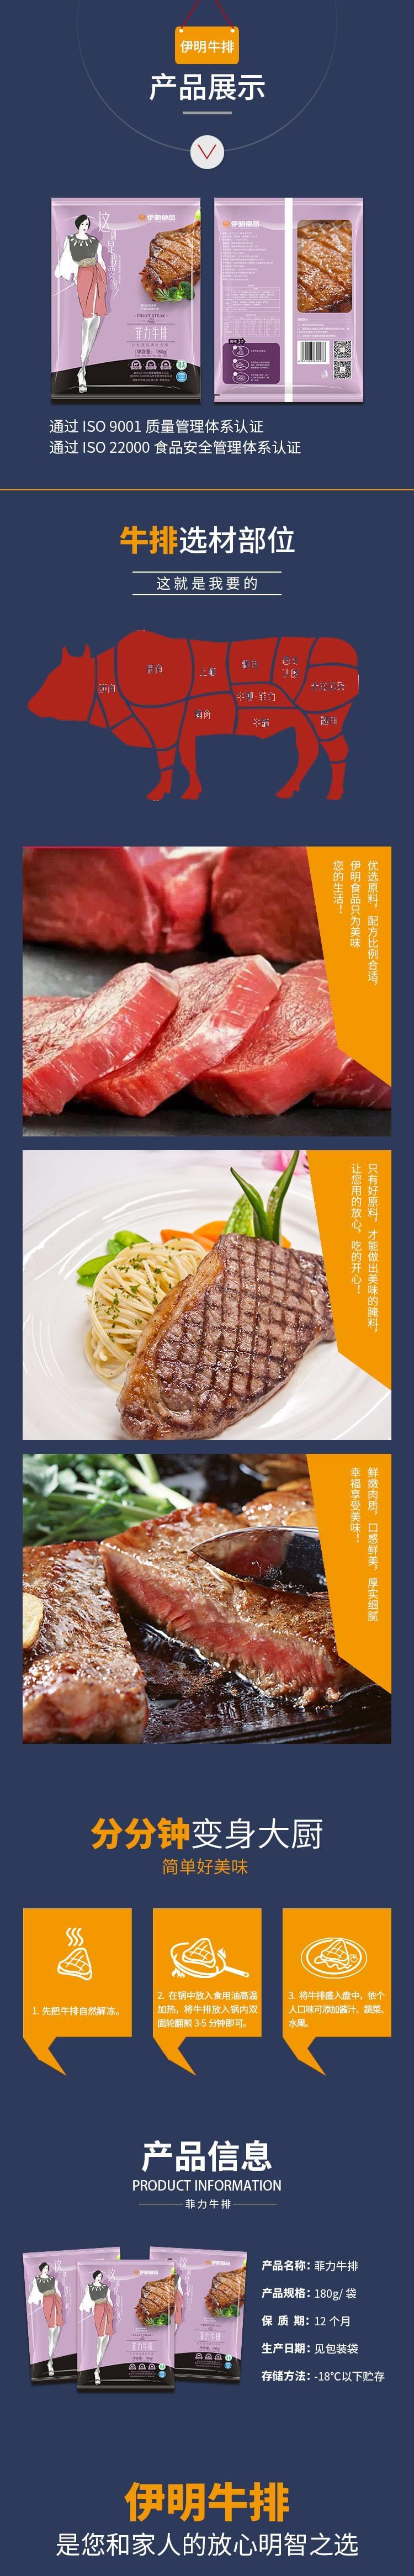 欧亿体育『中国』官方网站食品